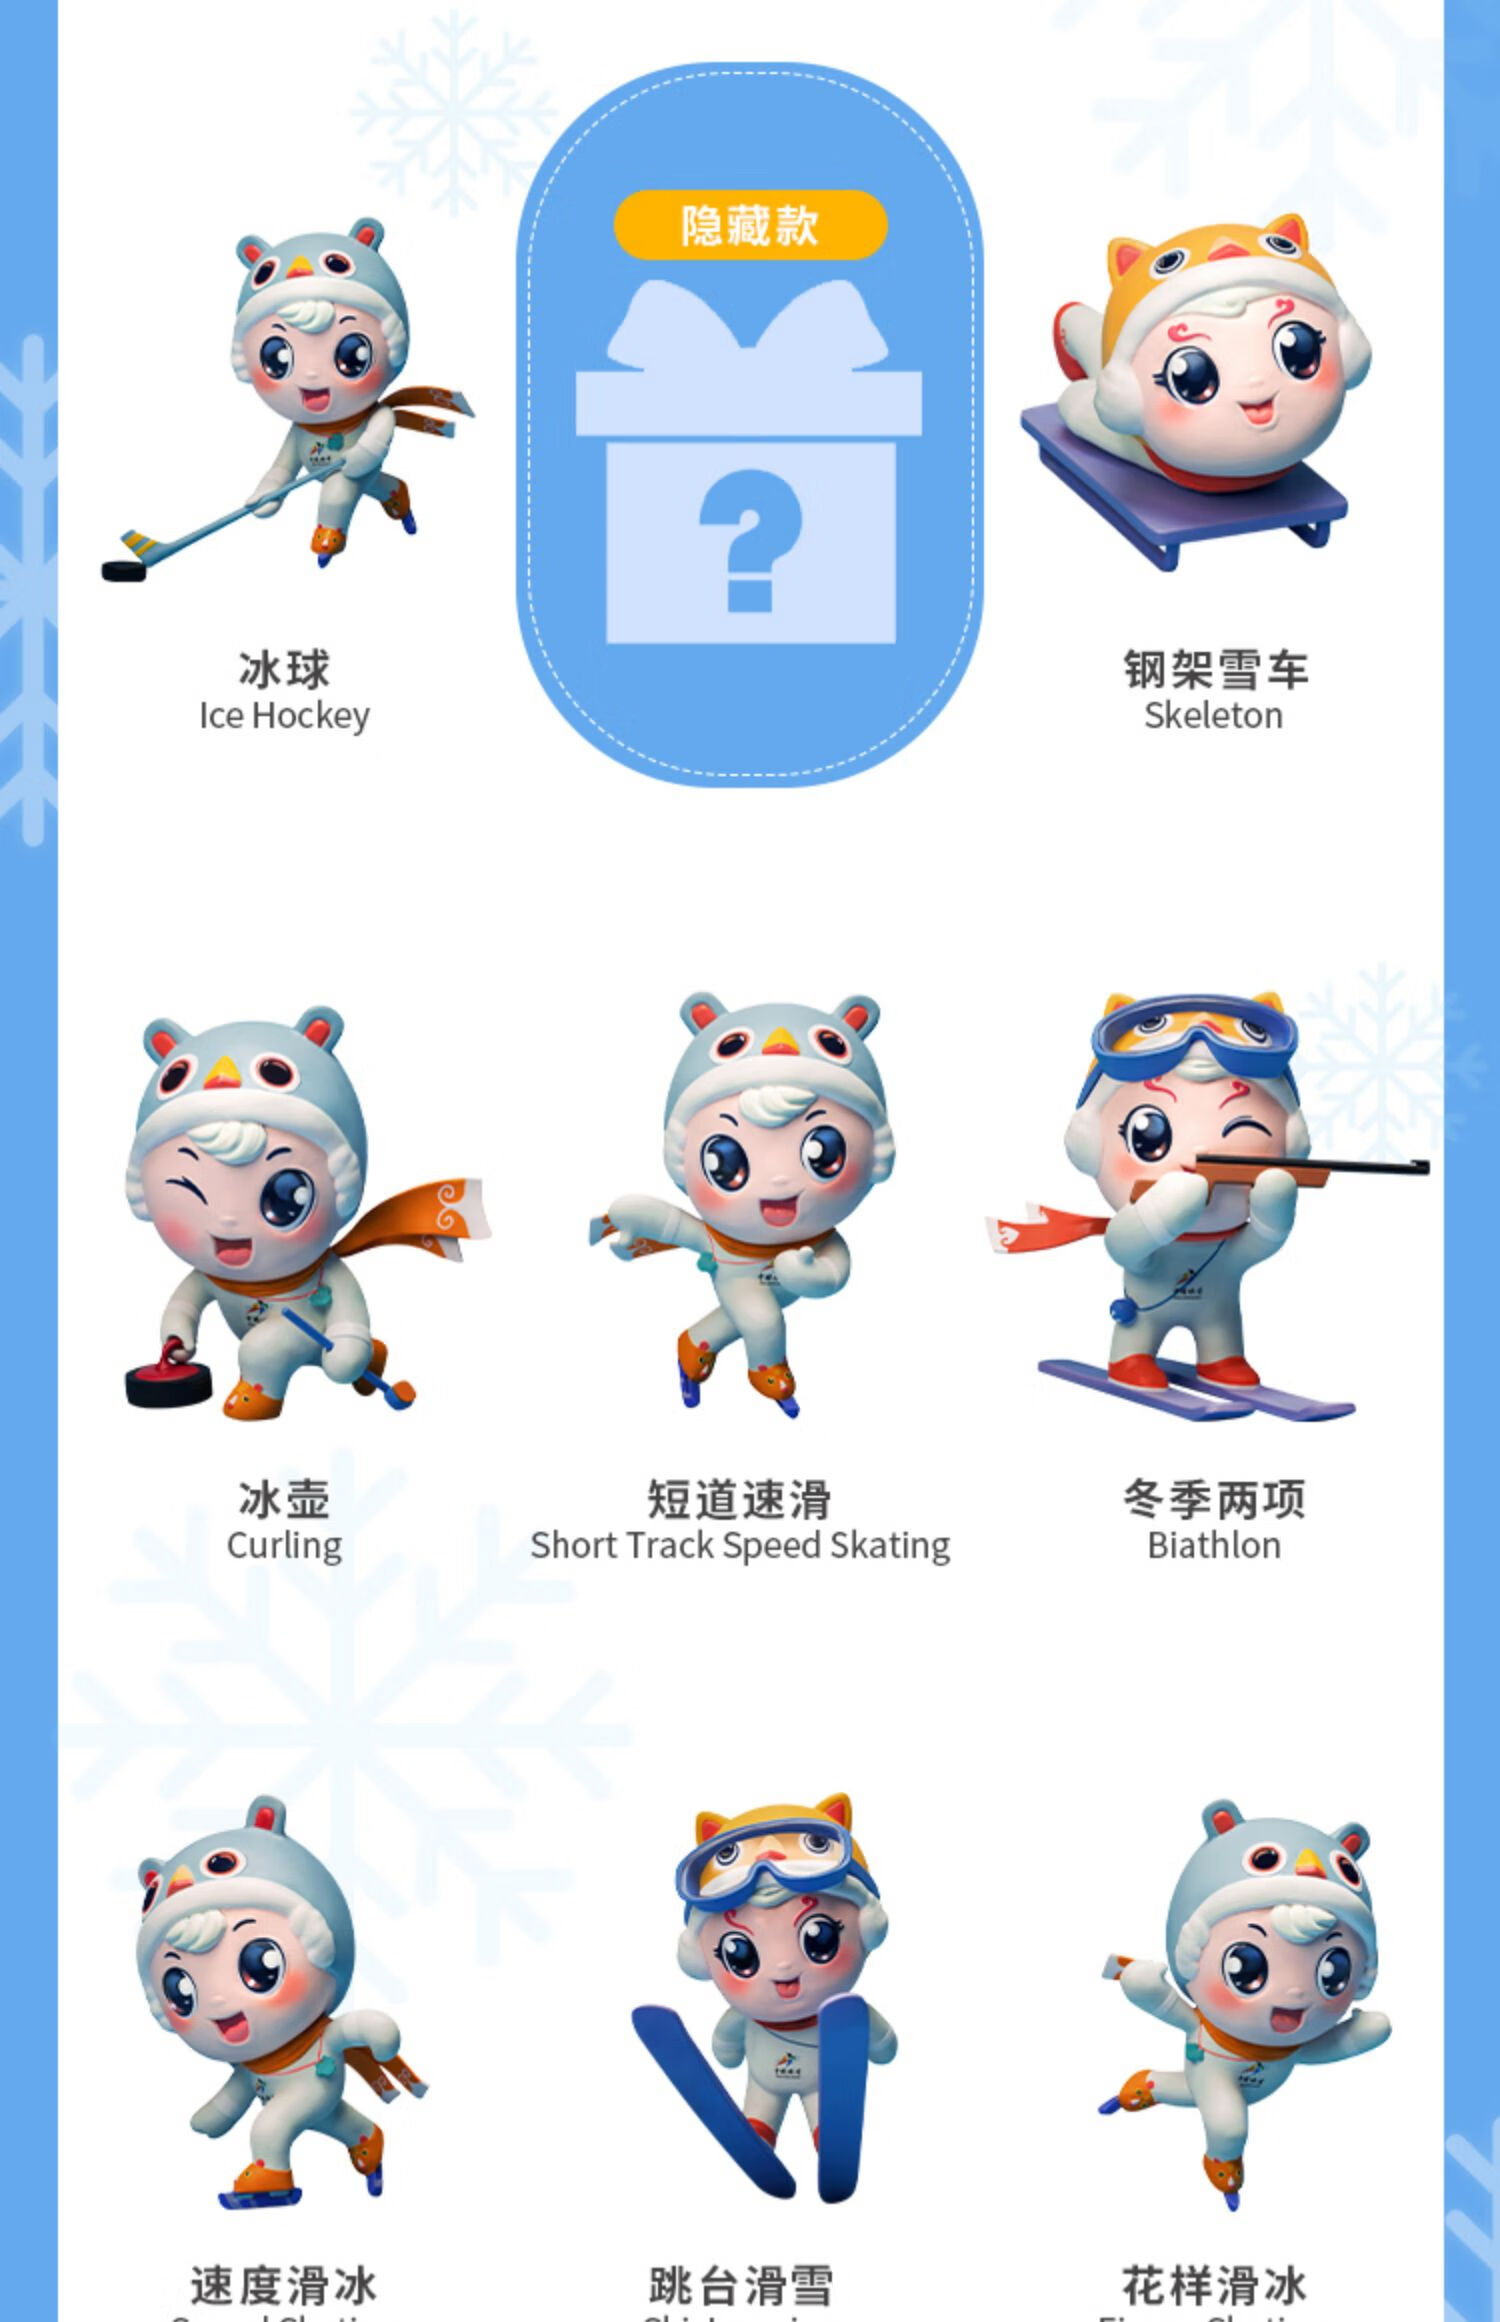 中国冰雪大会吉祥物图片